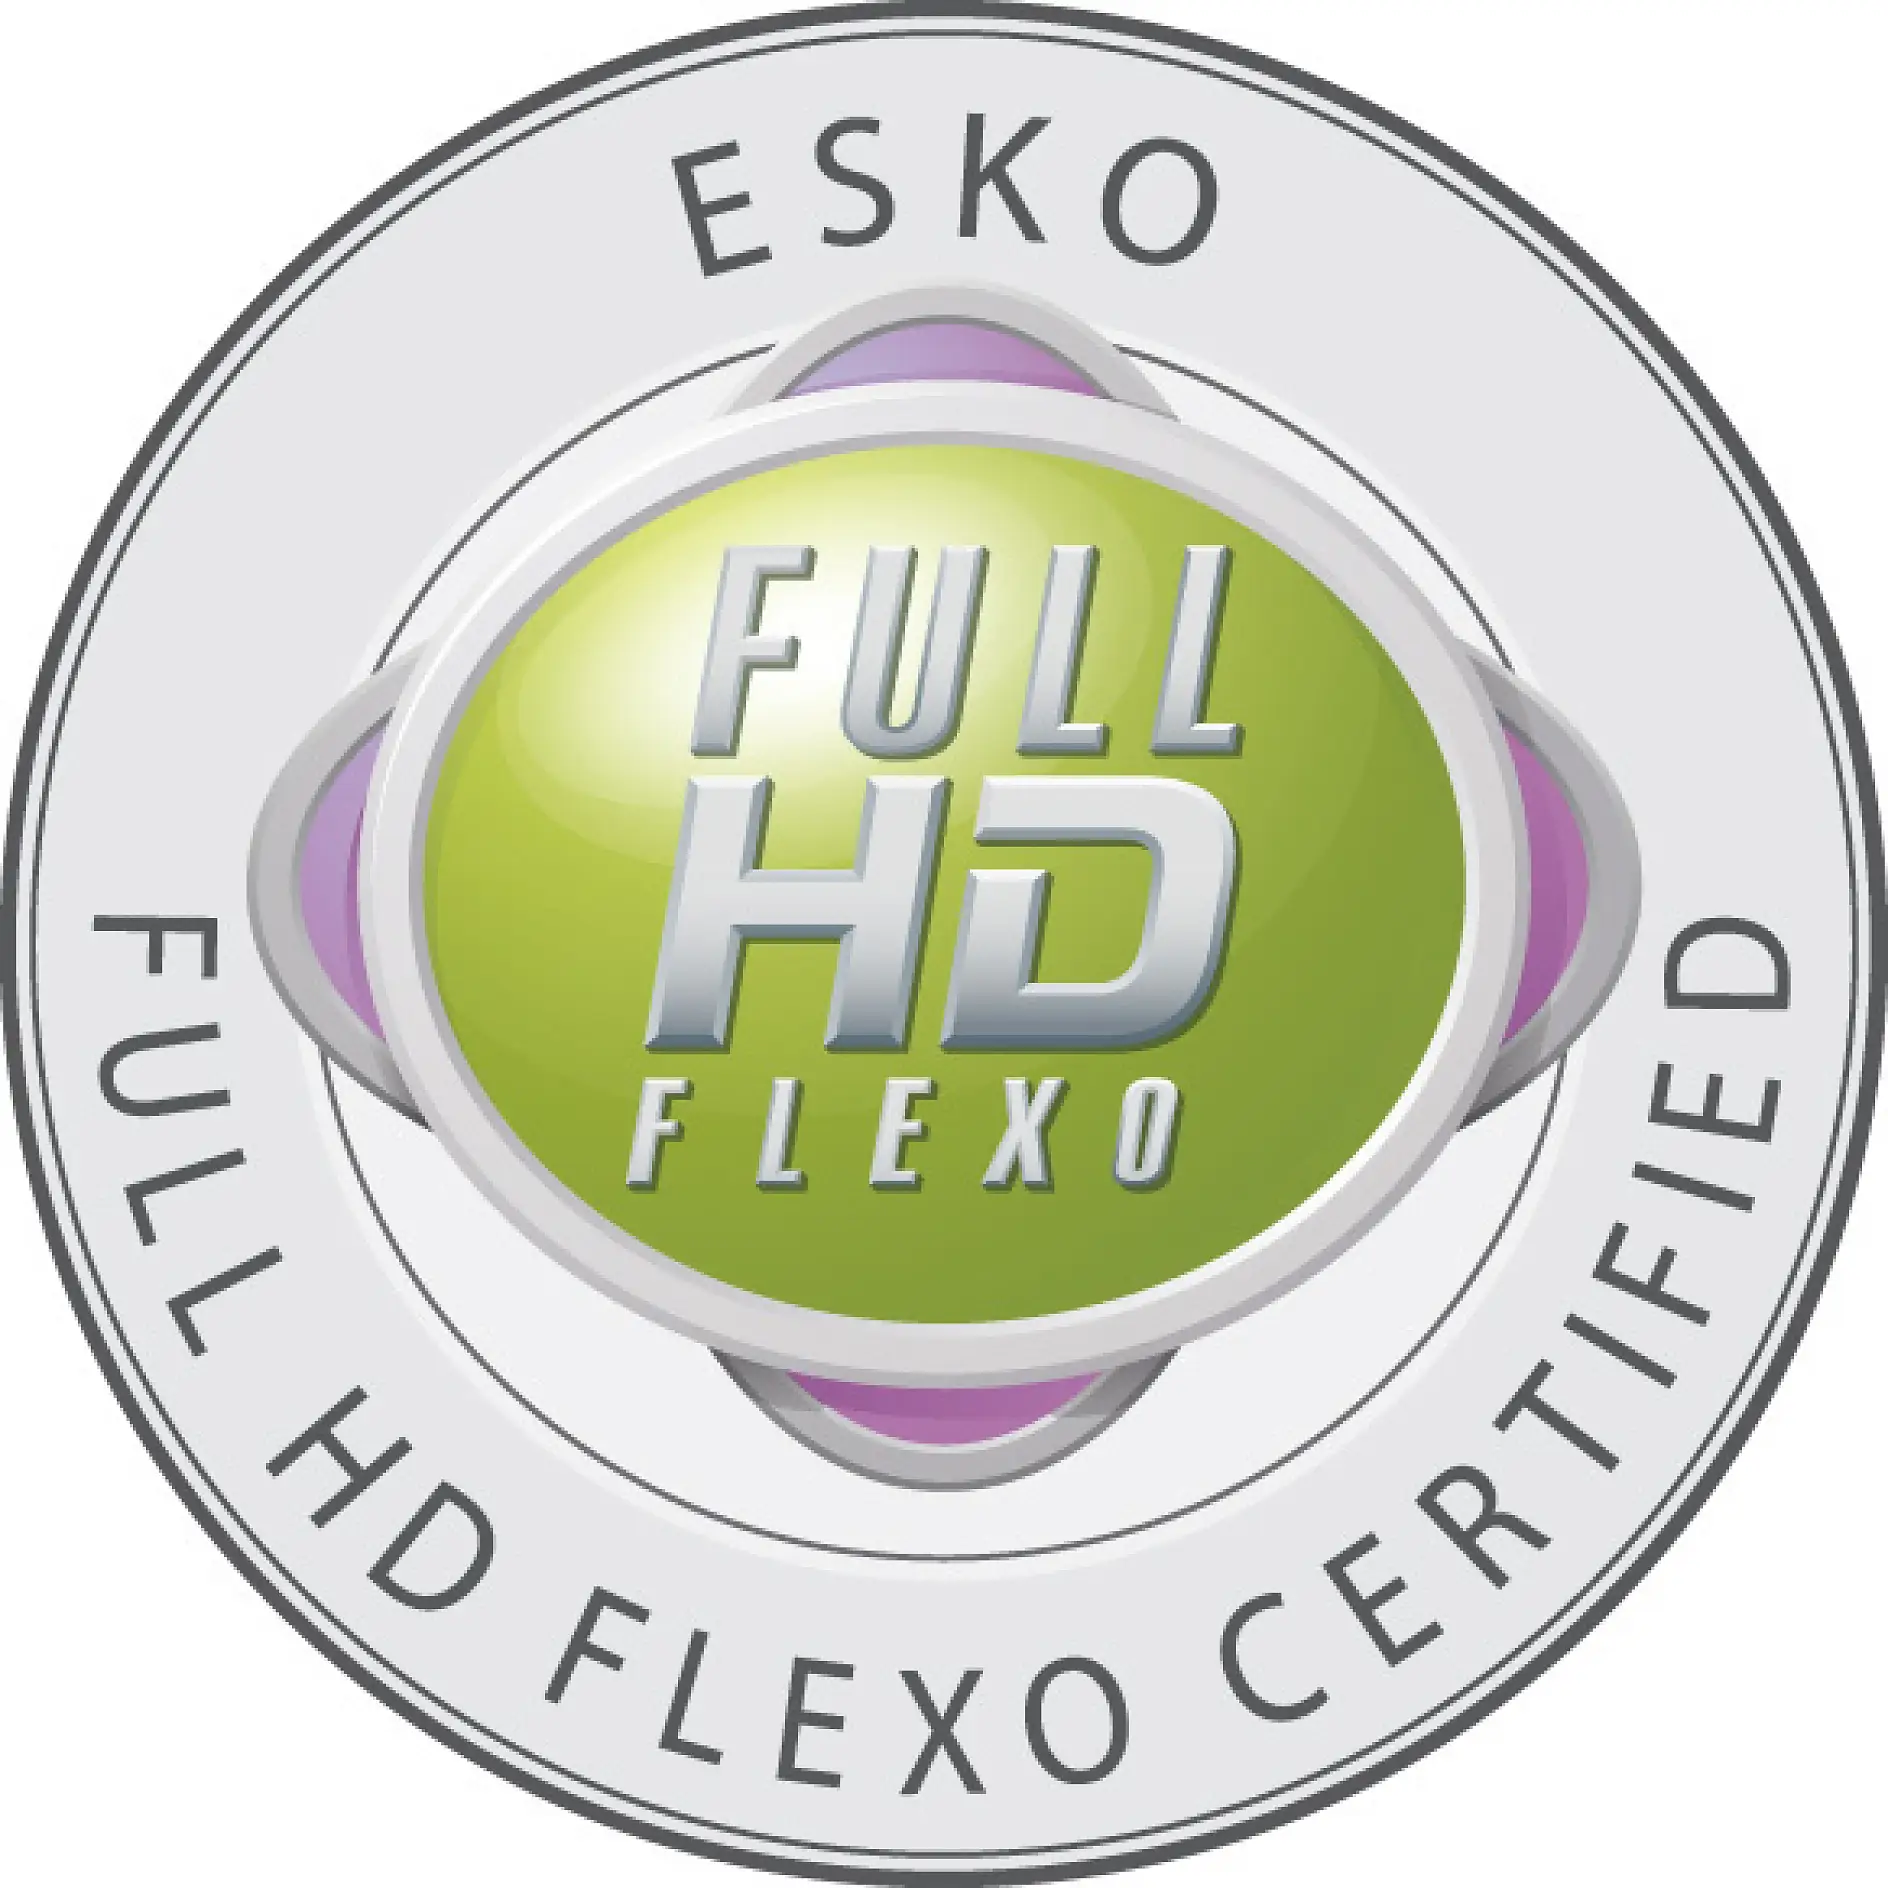 Μόνο πιστοποιημένες εταιρείες επιτρέπεται να φέρουν το σήμα Full HD Flexo